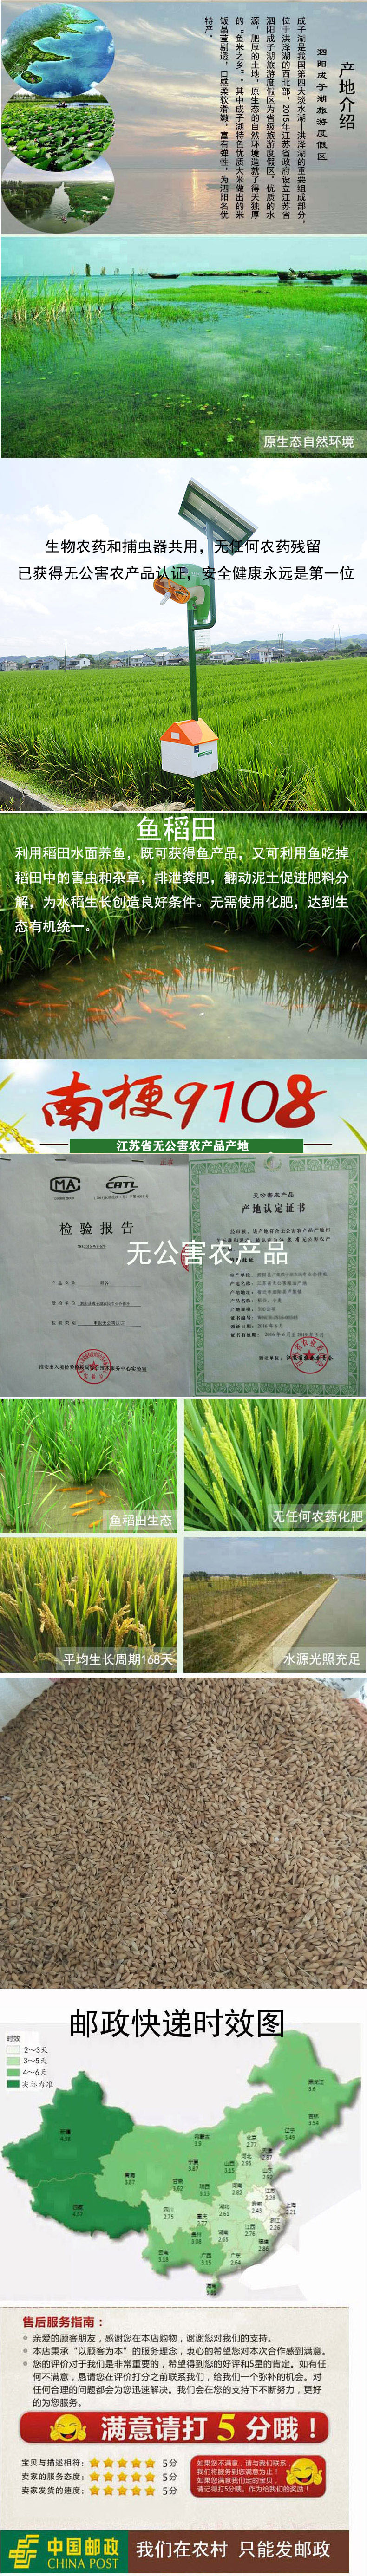 17年新稻谷南粳9108粳稻 无公害农产品认证茉莉香江苏农家5斤包邮